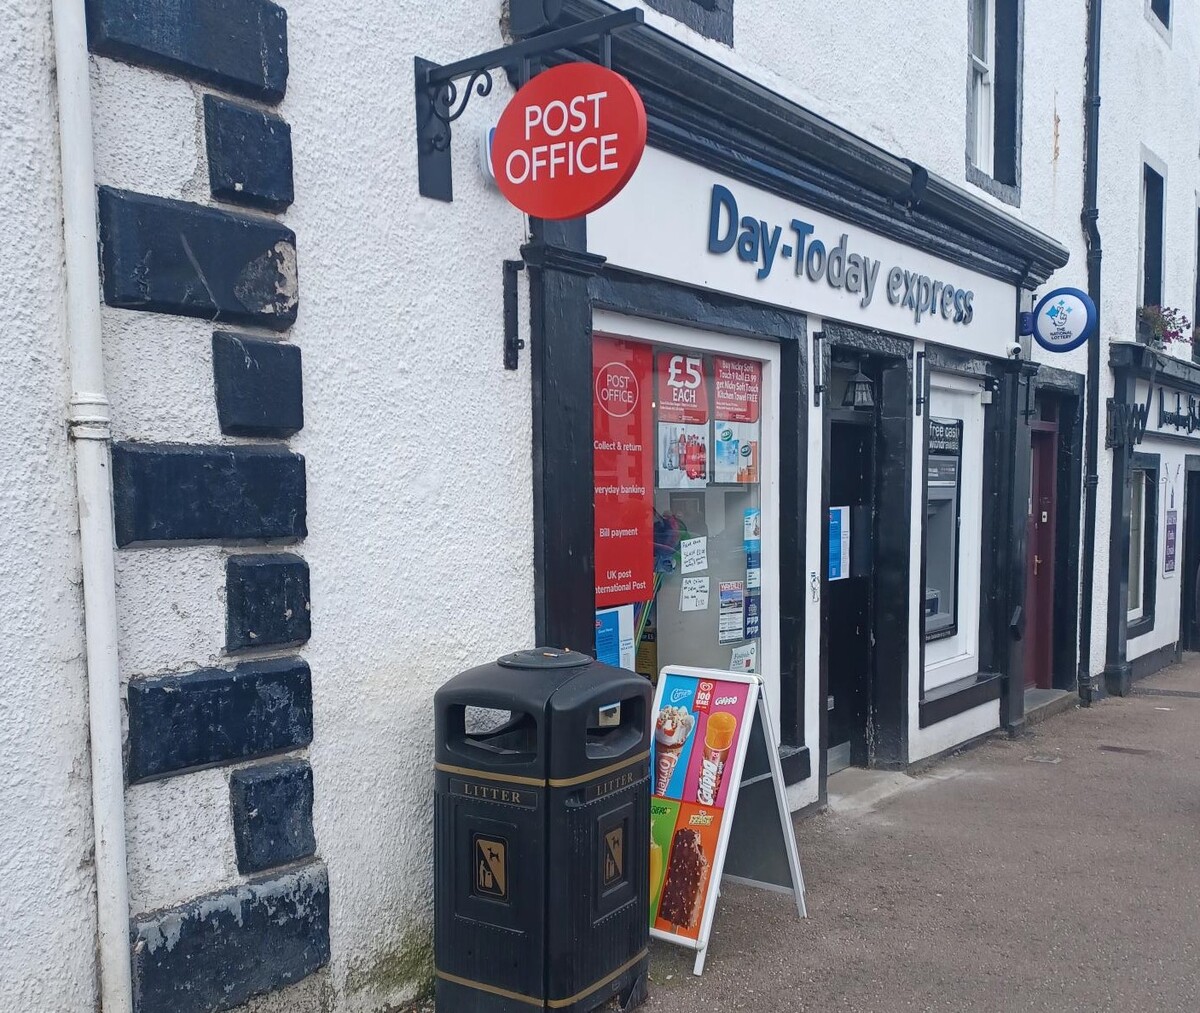 Dalmally loses mobile postal service